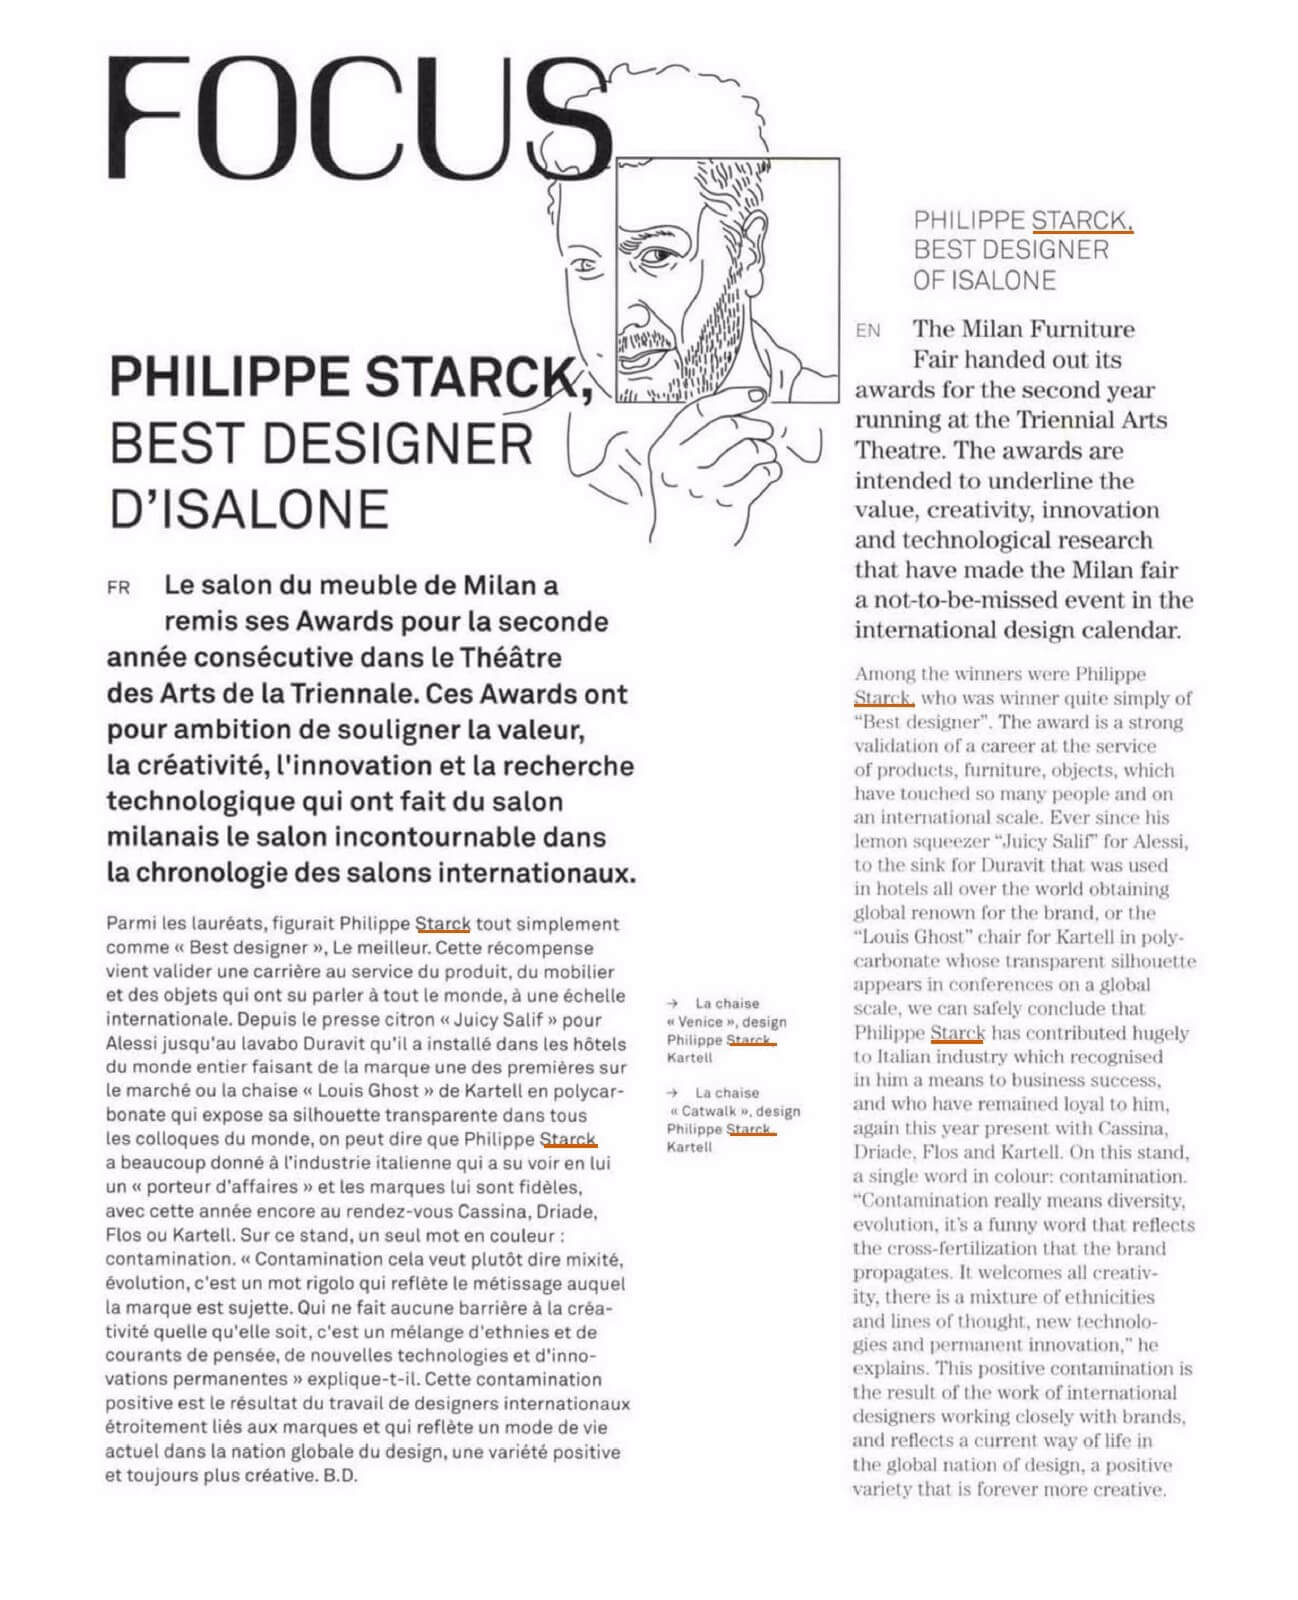 Focus: Philippe Starck, Best Designer d'Isalone